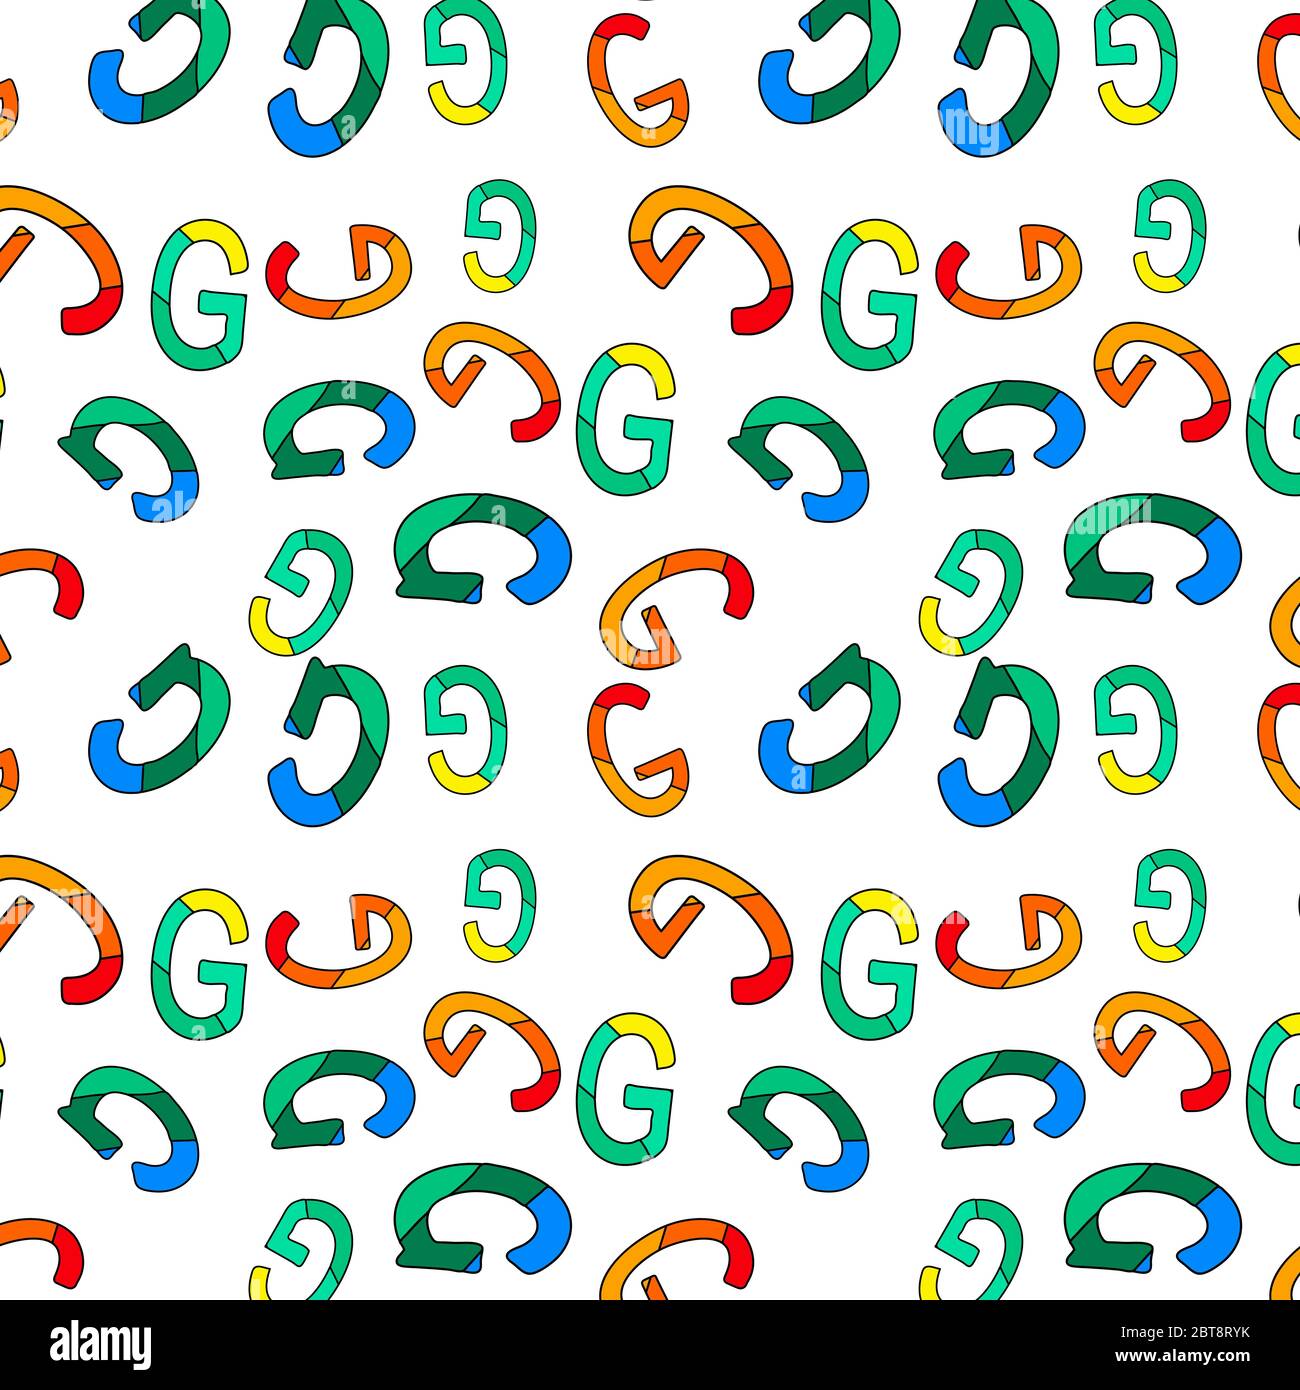 Lettres G - motif sans couture. Au hasard, G lettres de tons vert, bleu,  jaune, rouge et orange. G est la septième lettre de l'alphabet latin de base  Image Vectorielle Stock -